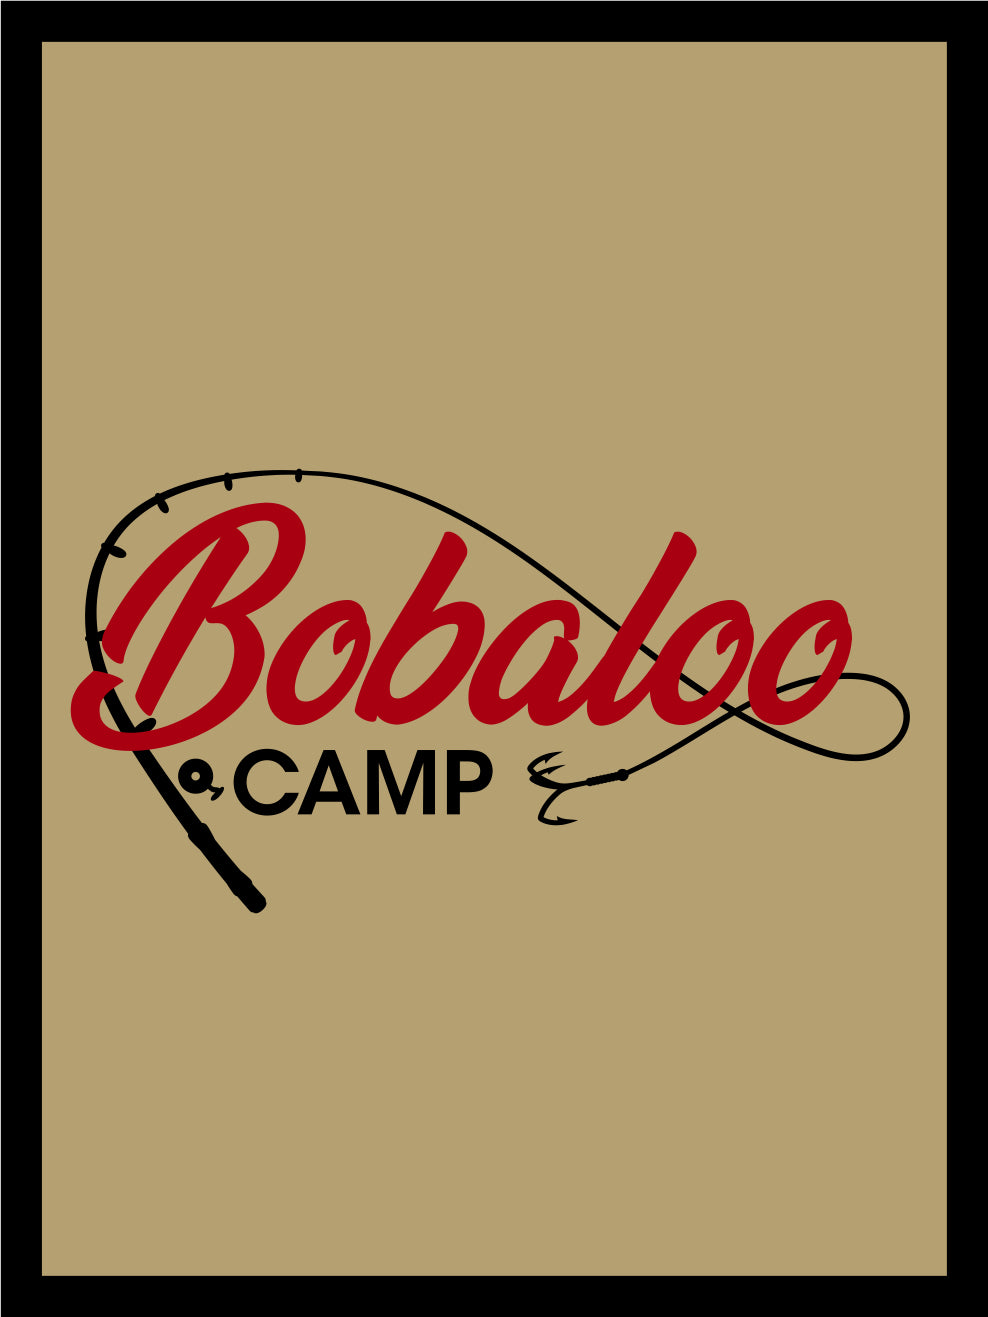 Camp Bobaloo v2 §